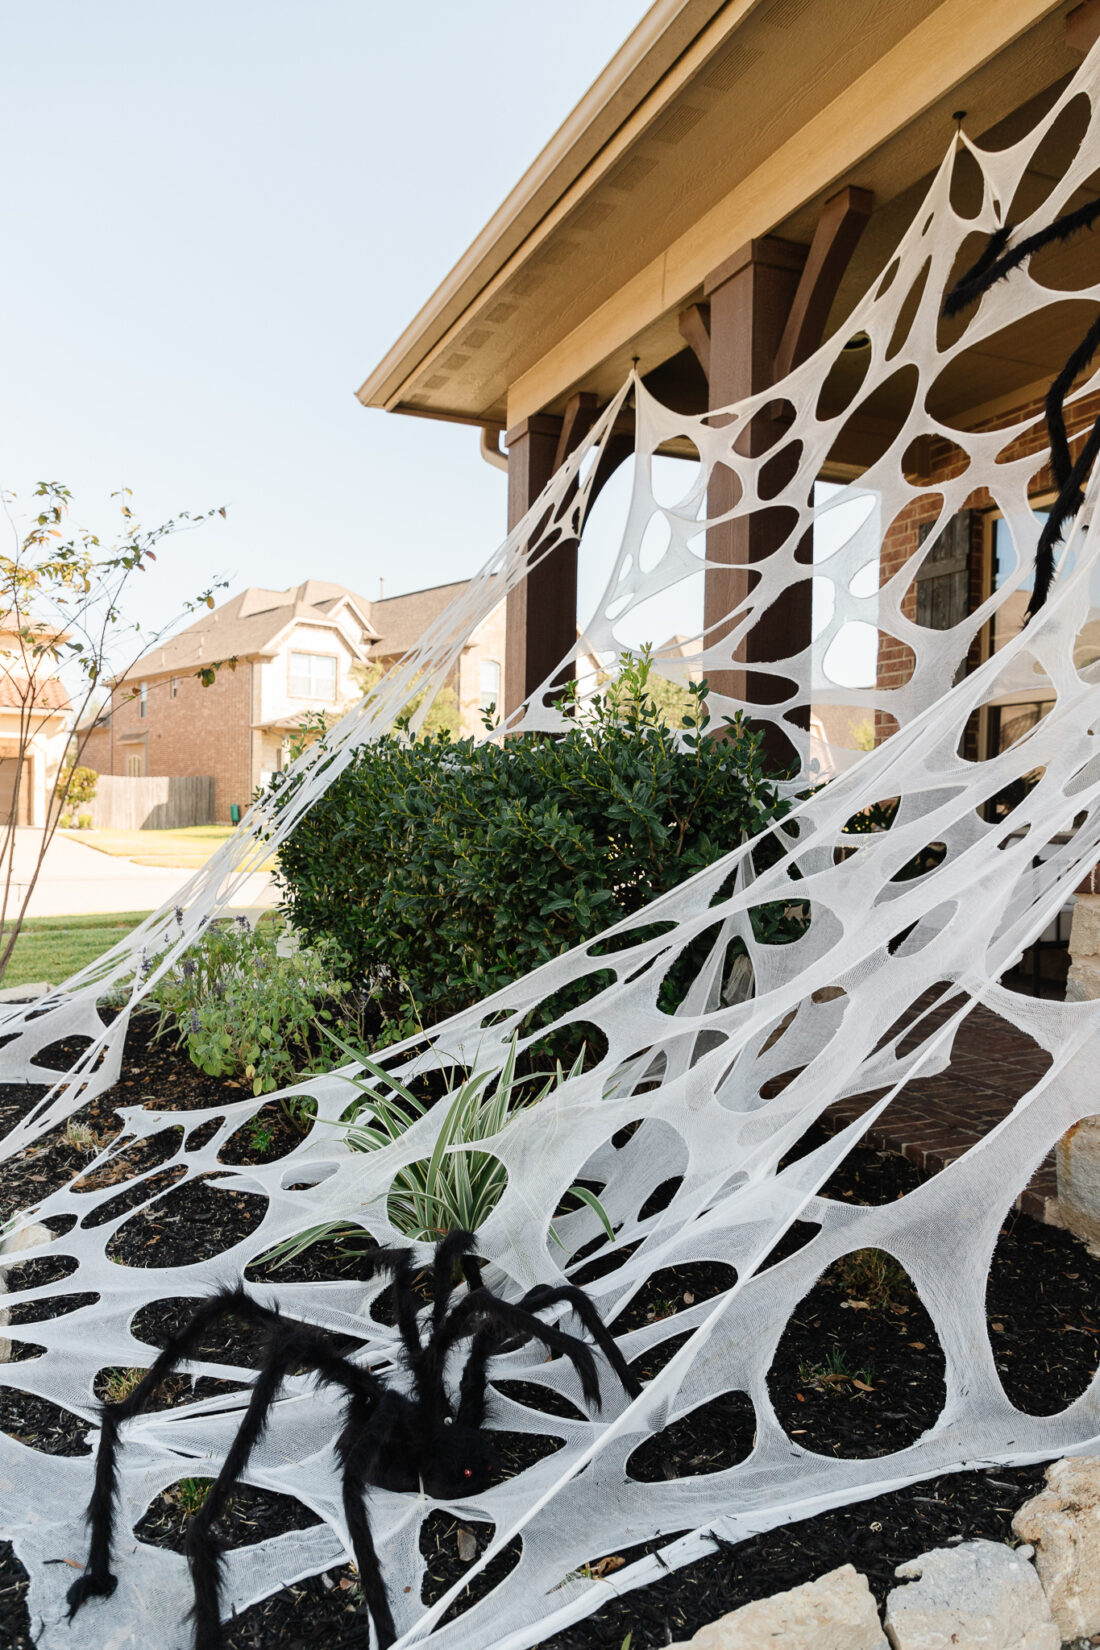 DIY beef netting spider webs for outdoor halloween decorations